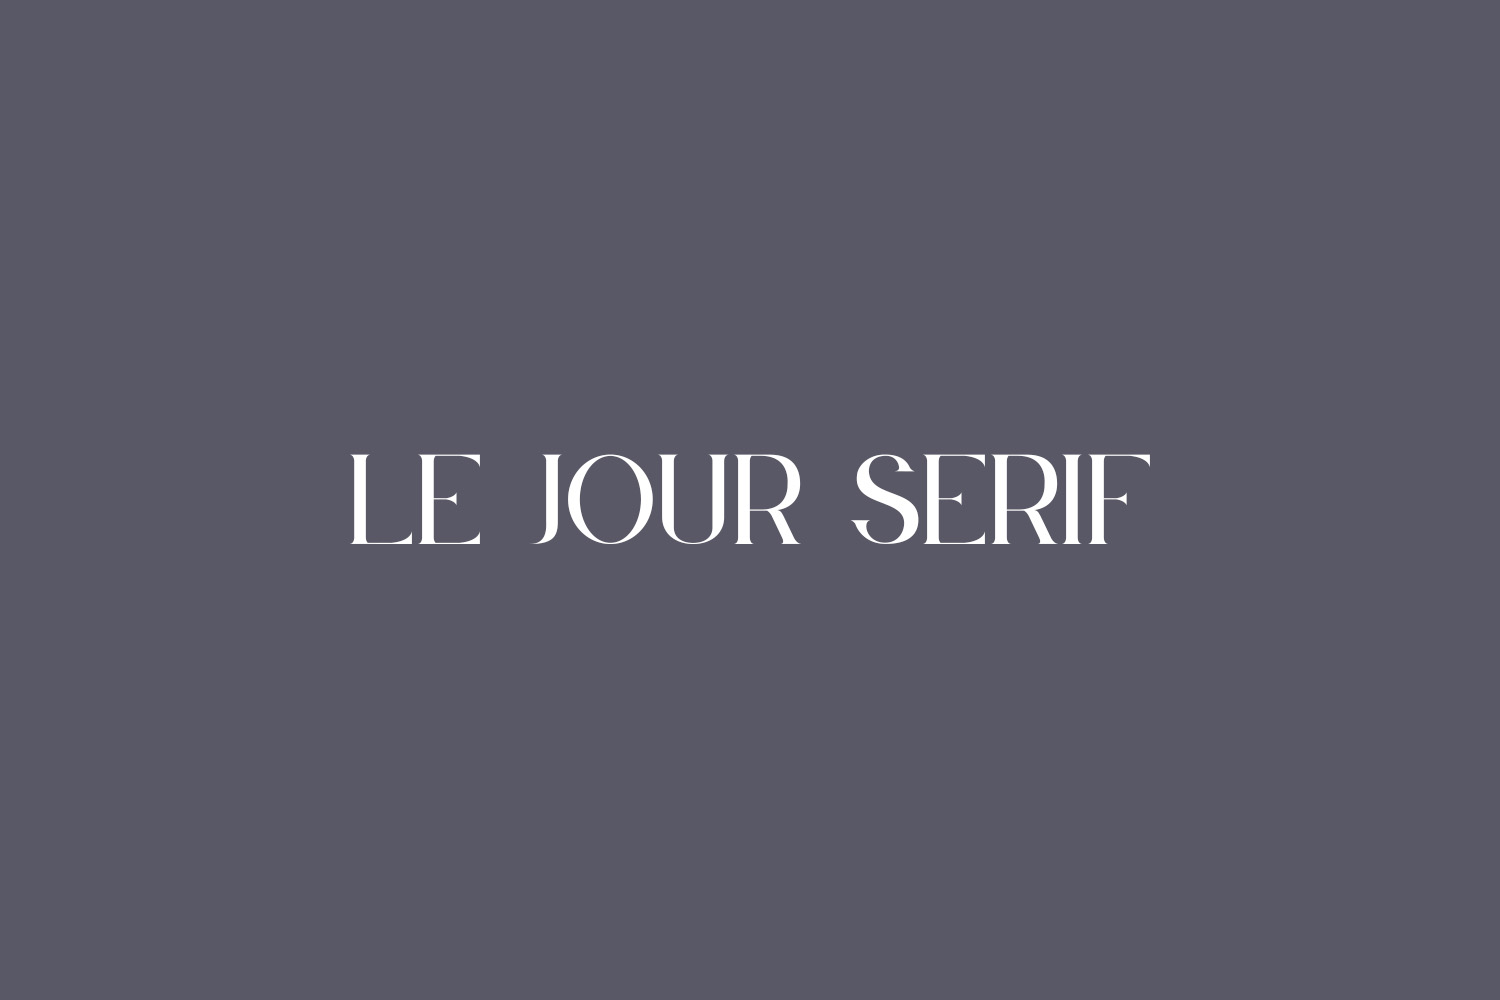 Le Jour Serif Free Font